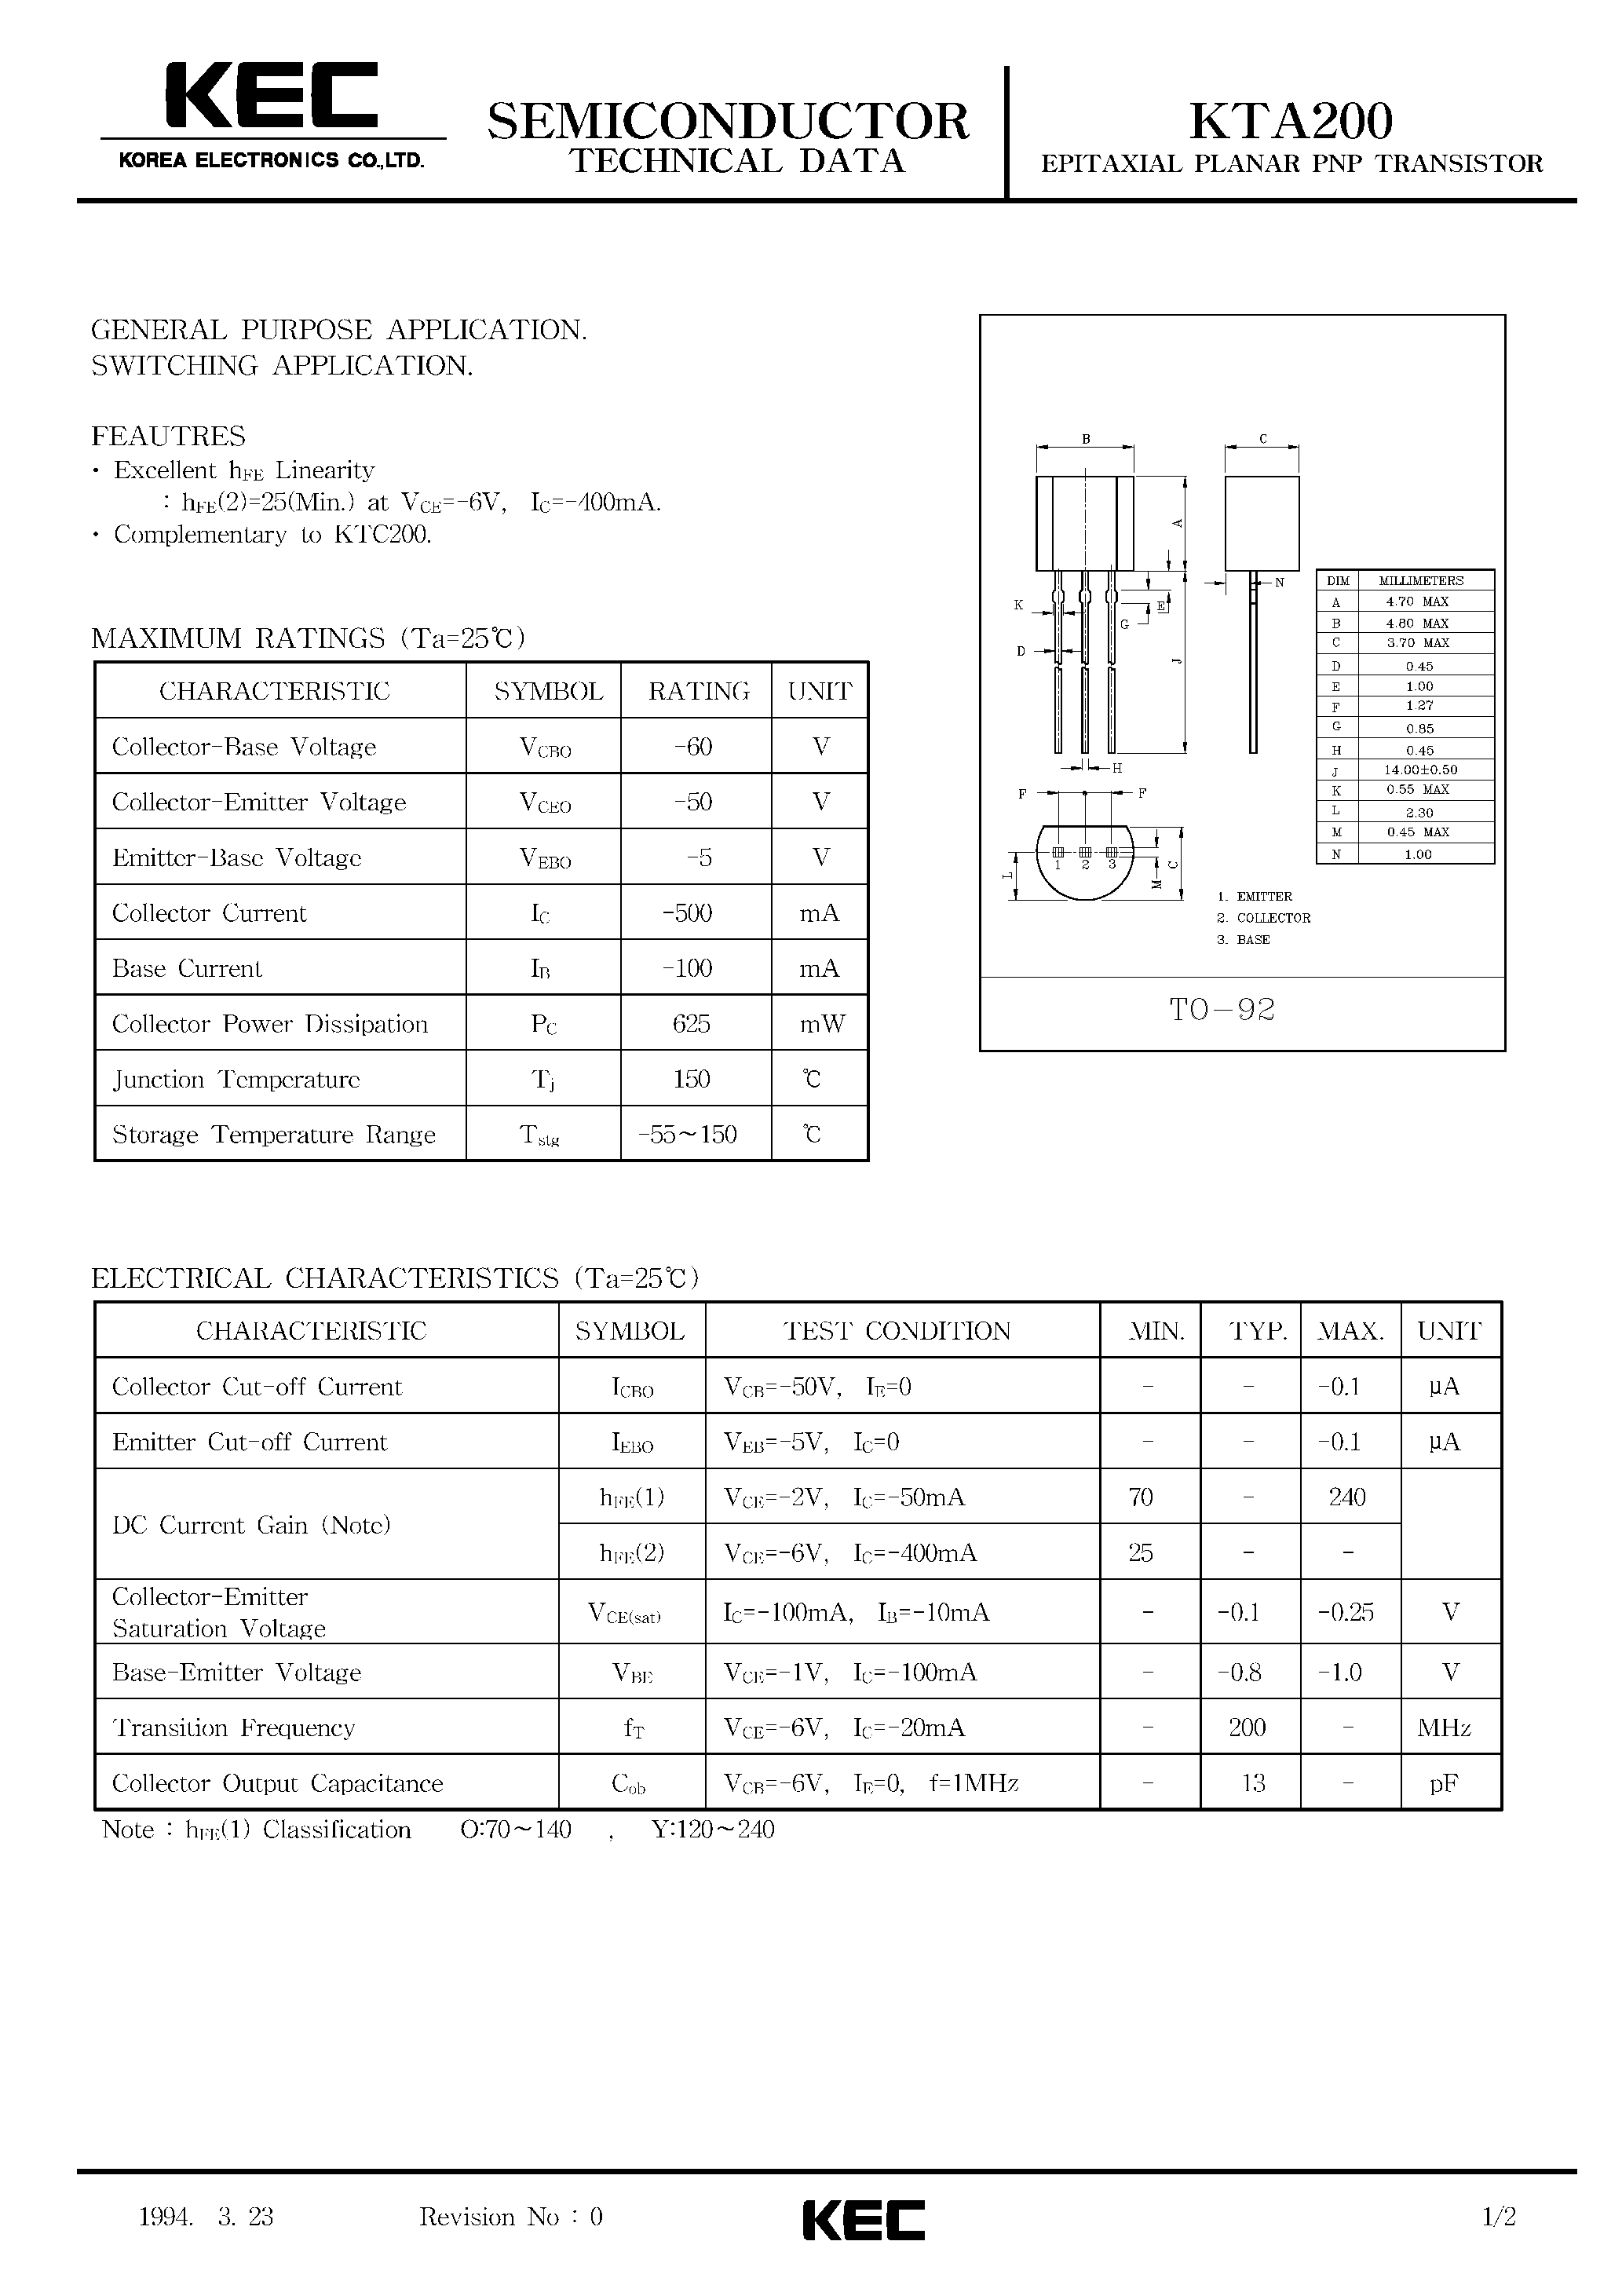 Datasheet KTA200 - EPITAXIAL PLANAR PNP TRANSISTOR (GENERAL PURPOSE/ SWITCHING) page 1